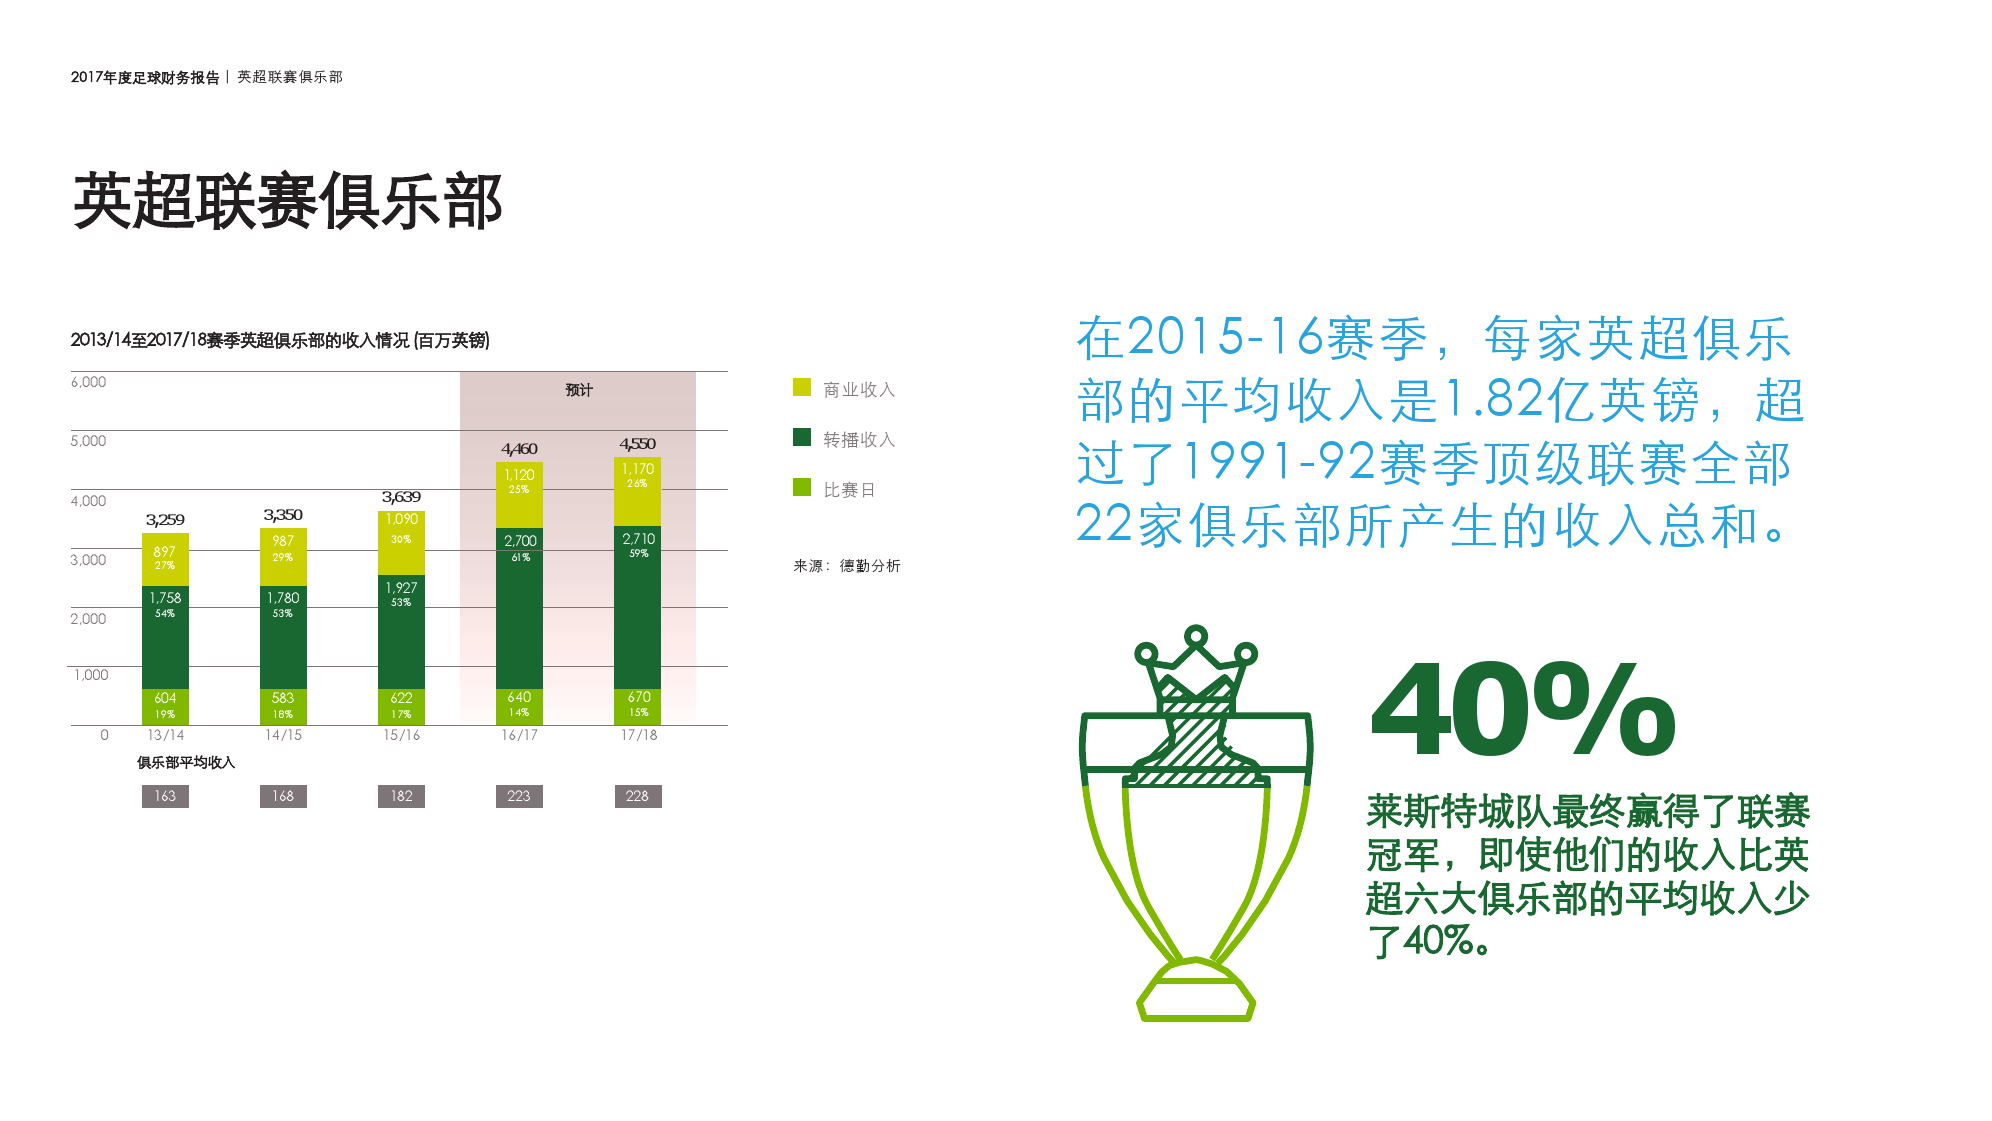 2017年足球联赛俱乐部运营数据分析报告(附图